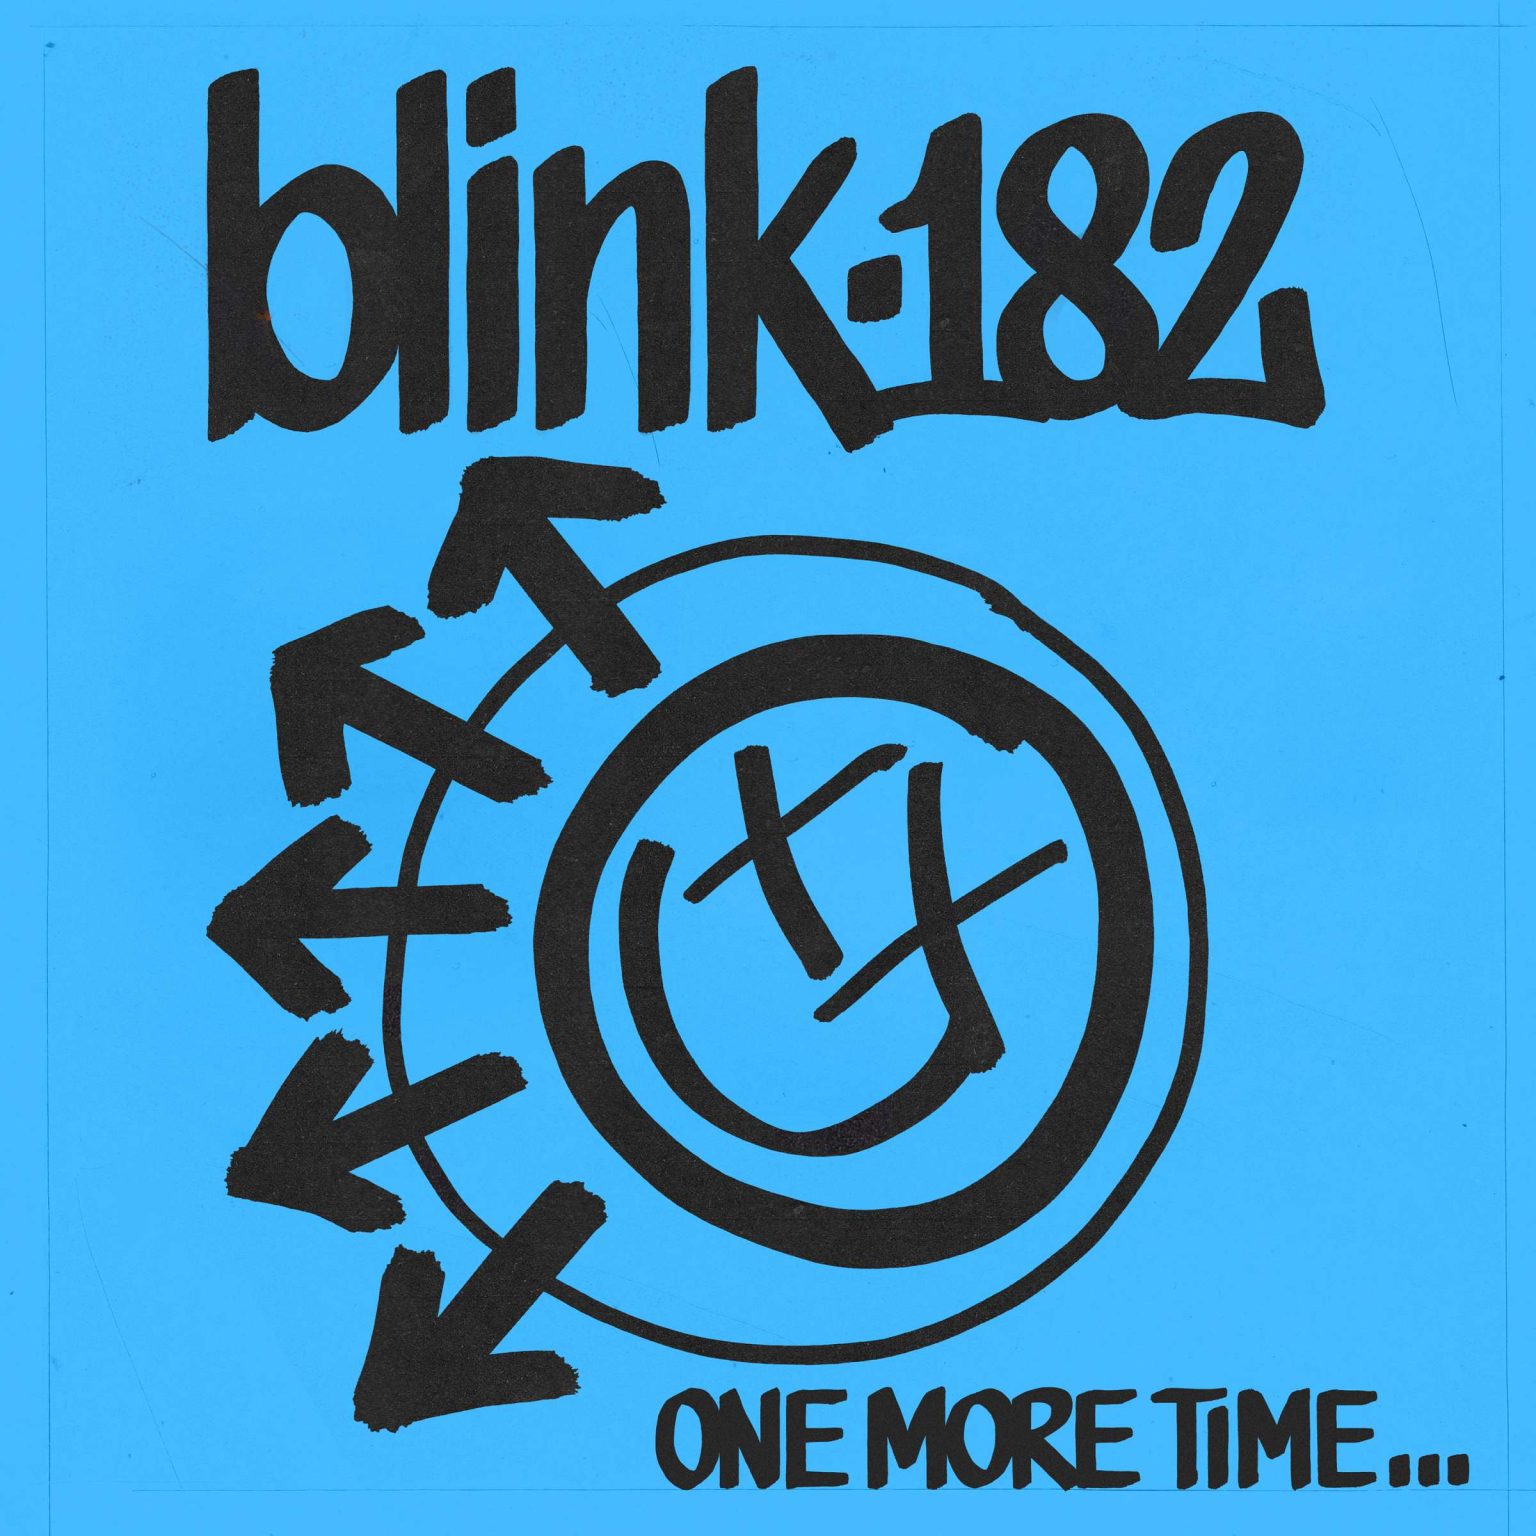 Okładka płyty CD artysty Blink-182 o tytule One More Time...